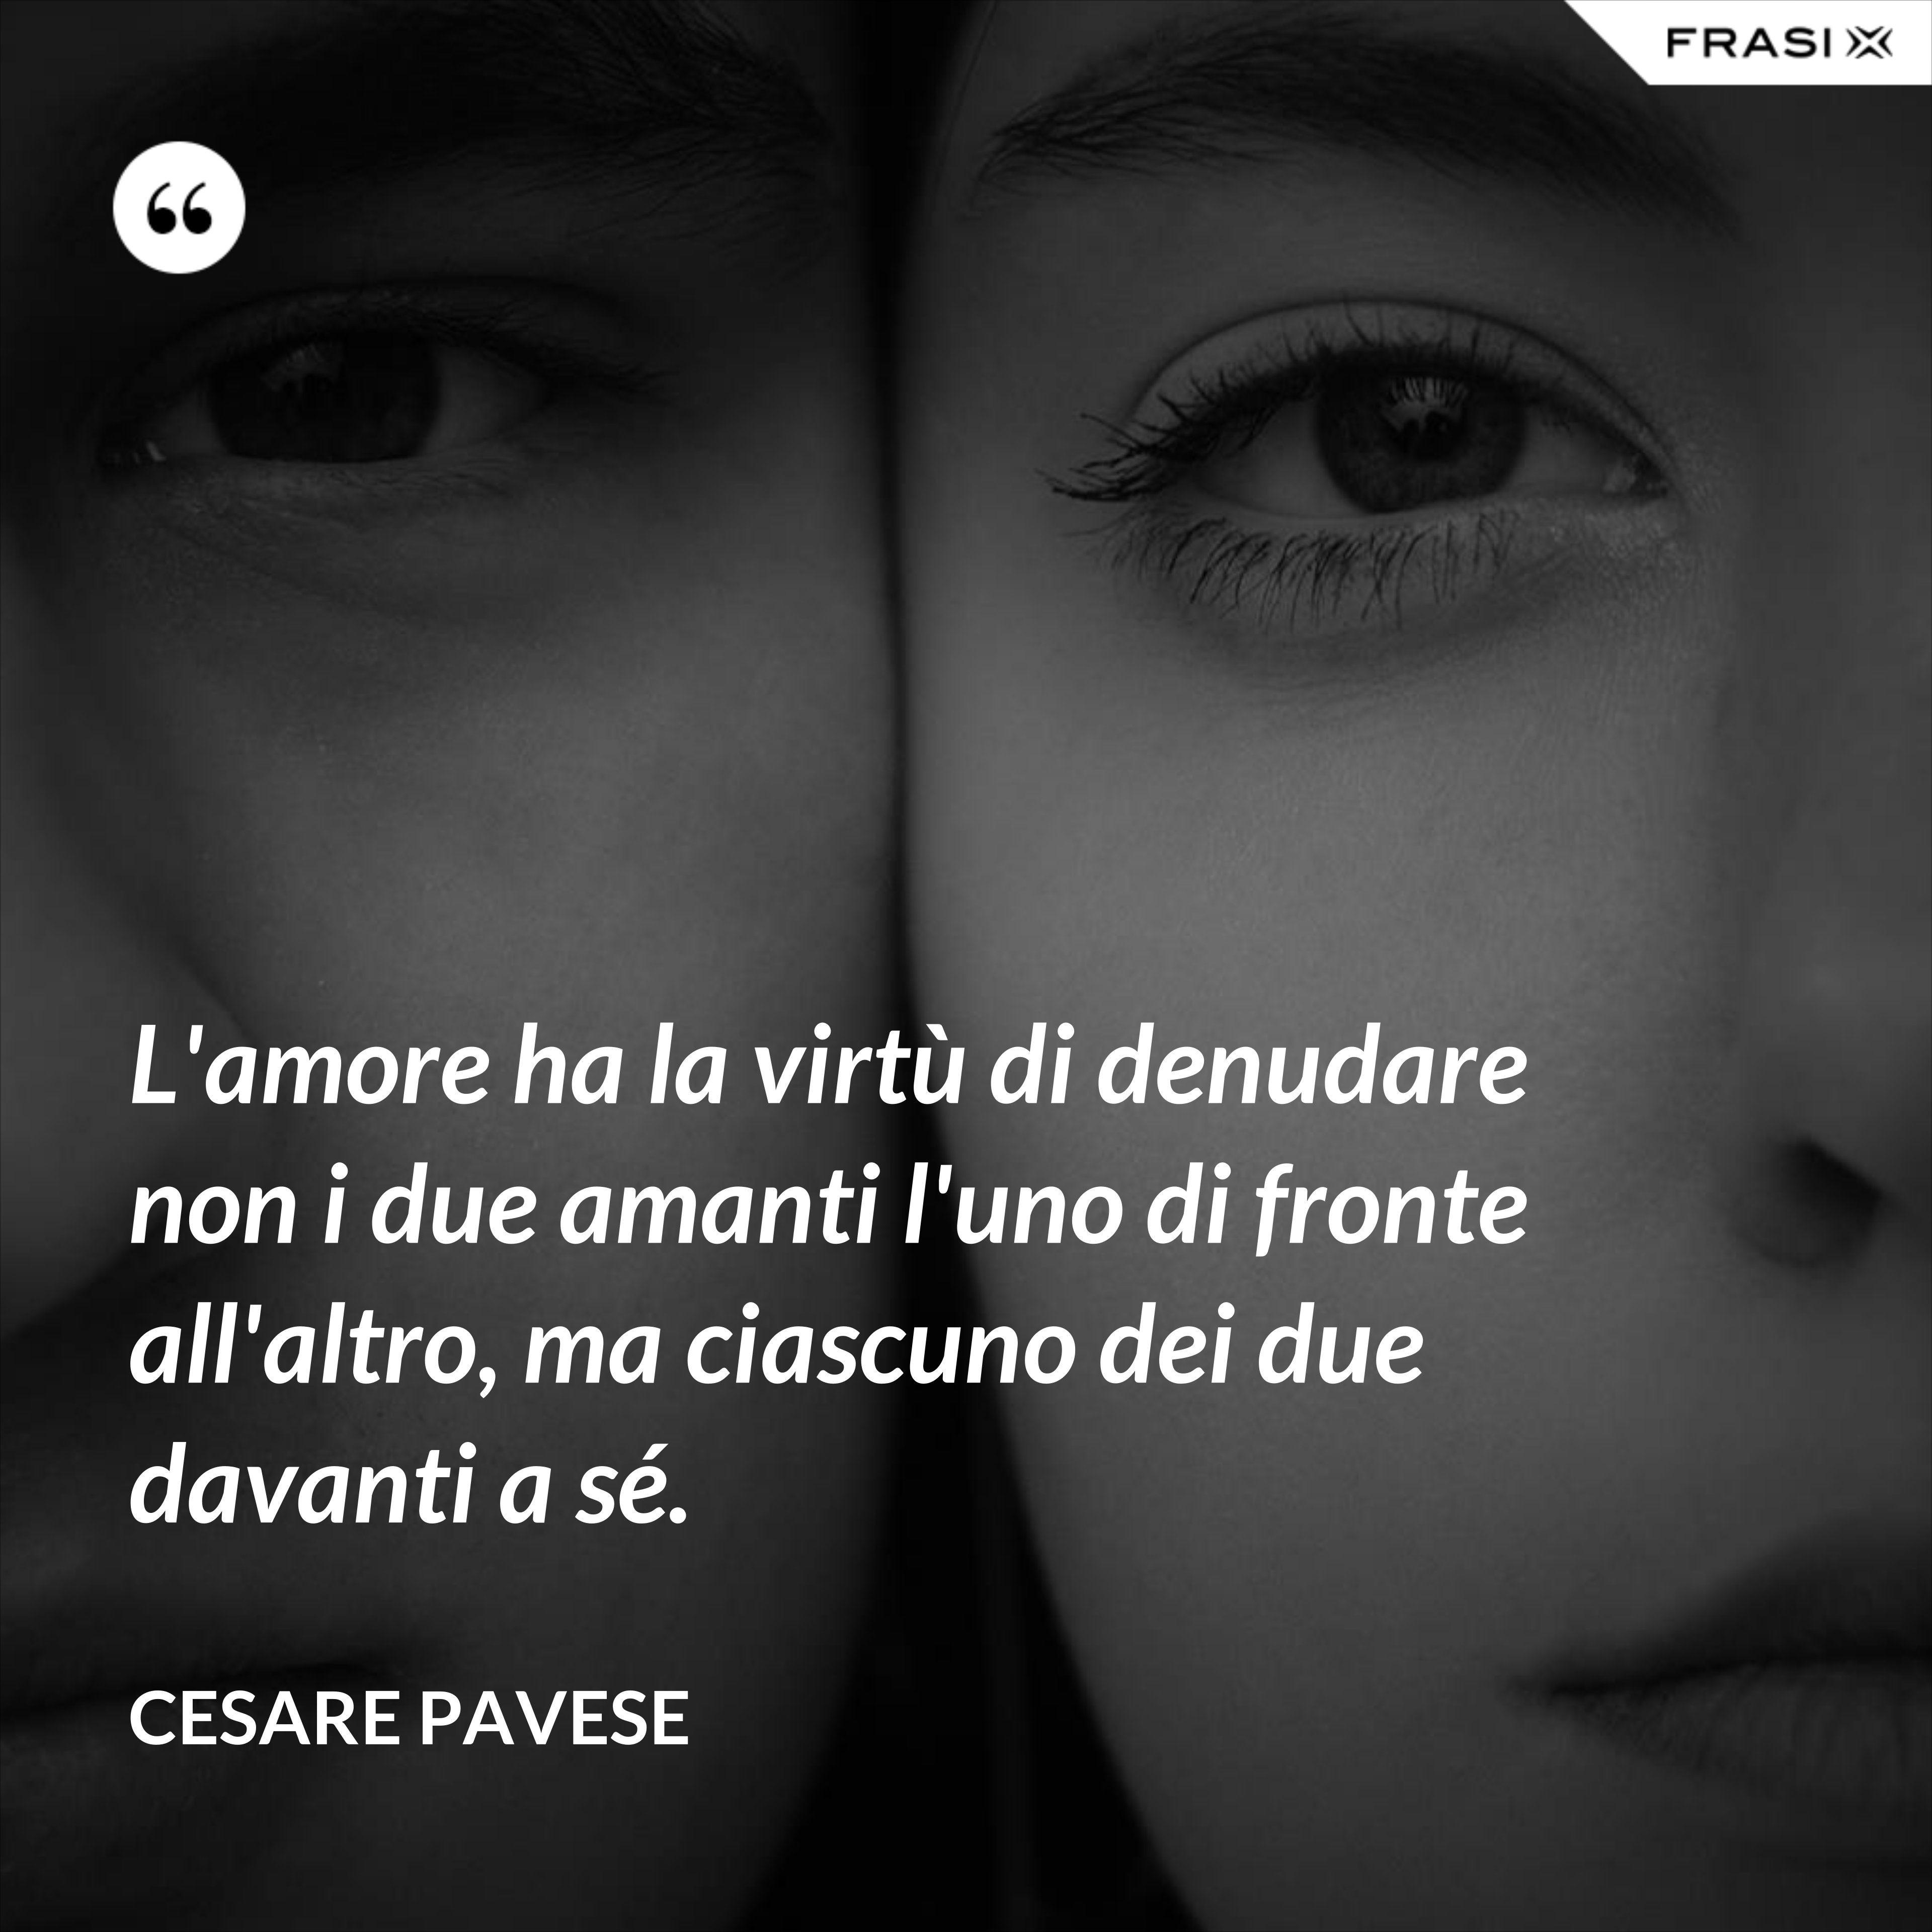 L'amore ha la virtù di denudare non i due amanti l'uno di fronte all'altro, ma ciascuno dei due davanti a sé. - Cesare Pavese